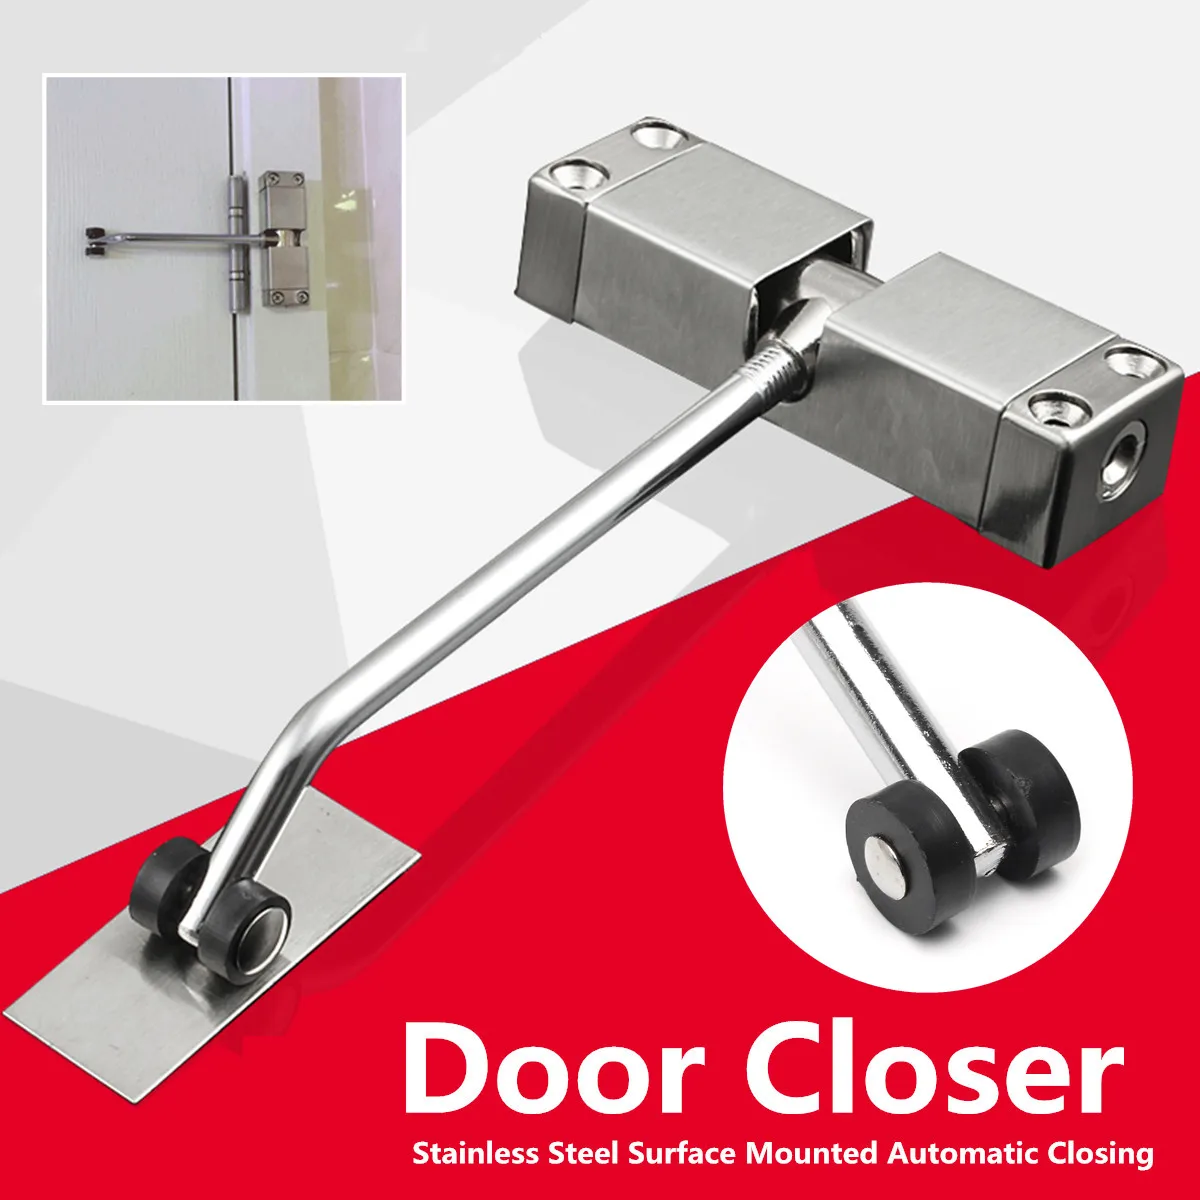 Автоматический дверной замок регулируемый подходит + 4 винта + внутренний шестигранный ключ полностью для двери вес для 20-40 кг домашний офис